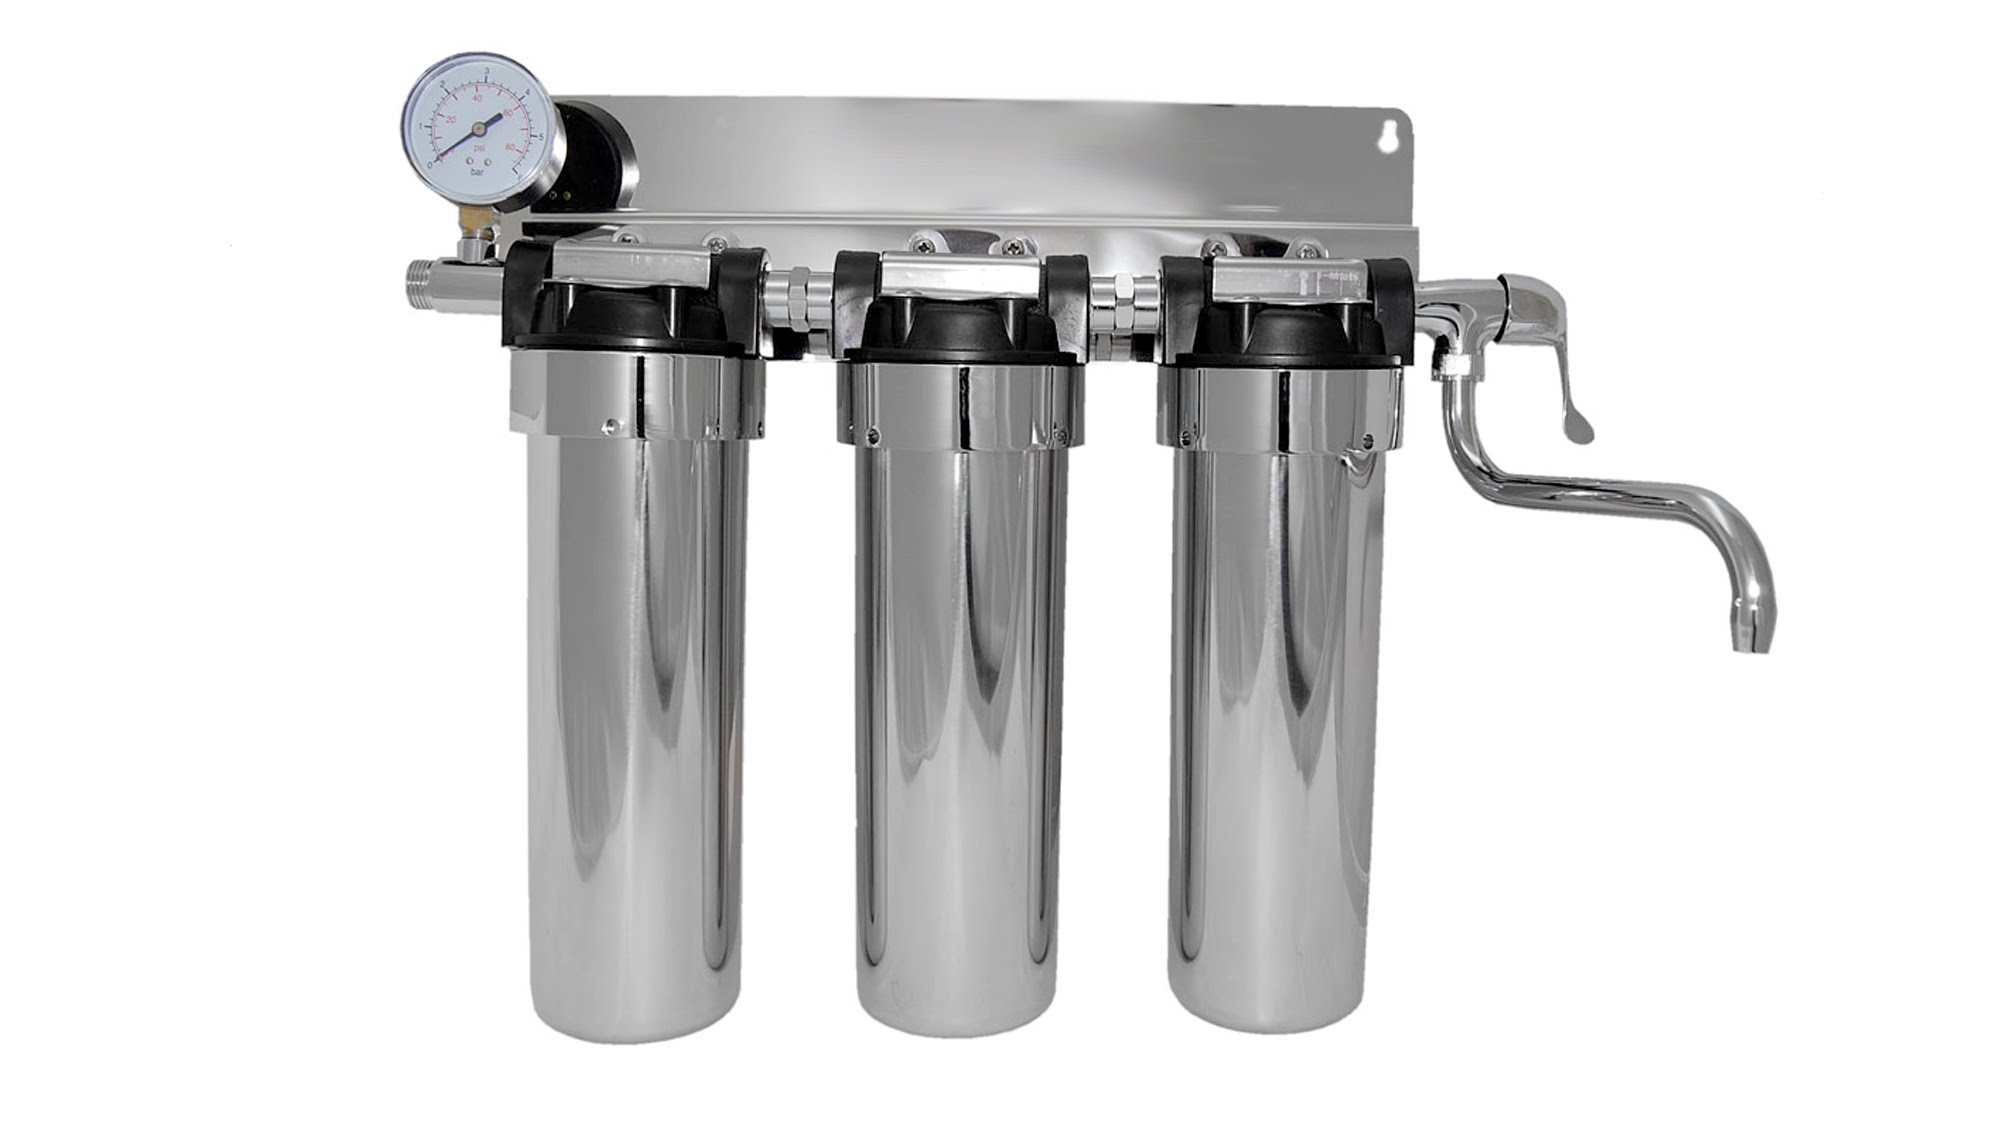  проточные фильтры для воды по лучшей цене